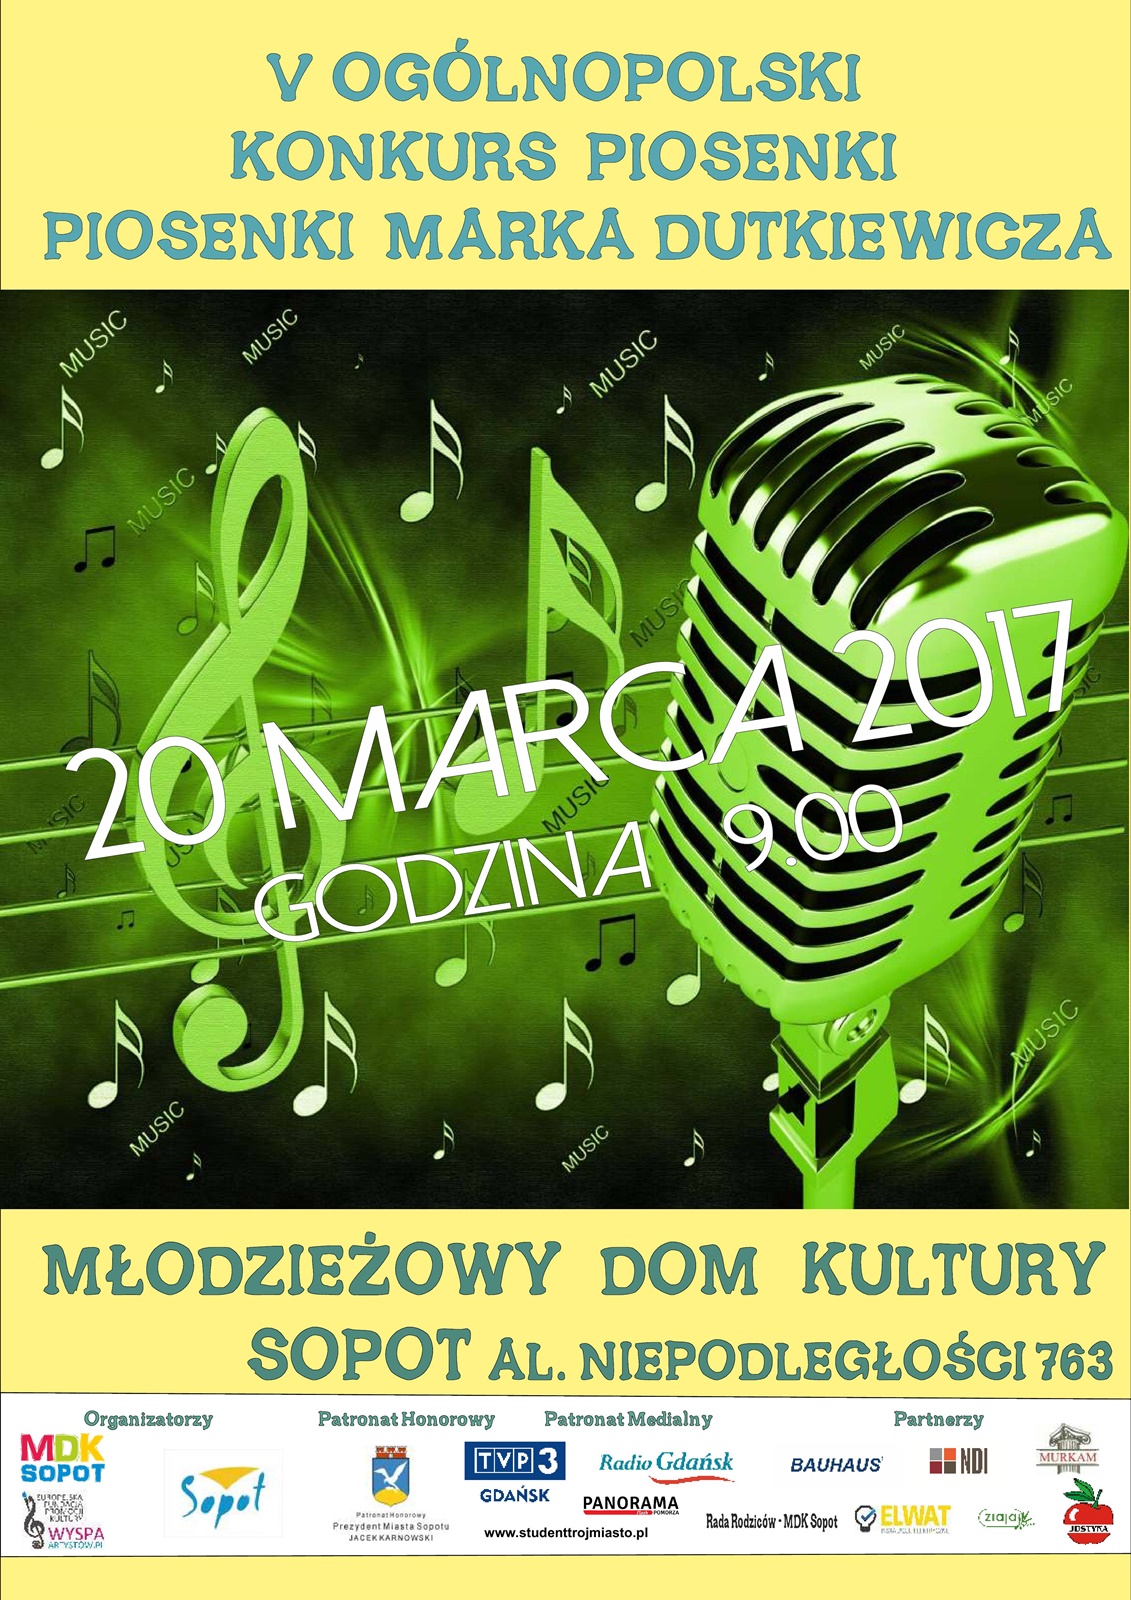 V Ogólnopolski Konkurs Piosenki „Piosenki Marka Dutkiewicza” w MDK Sopot